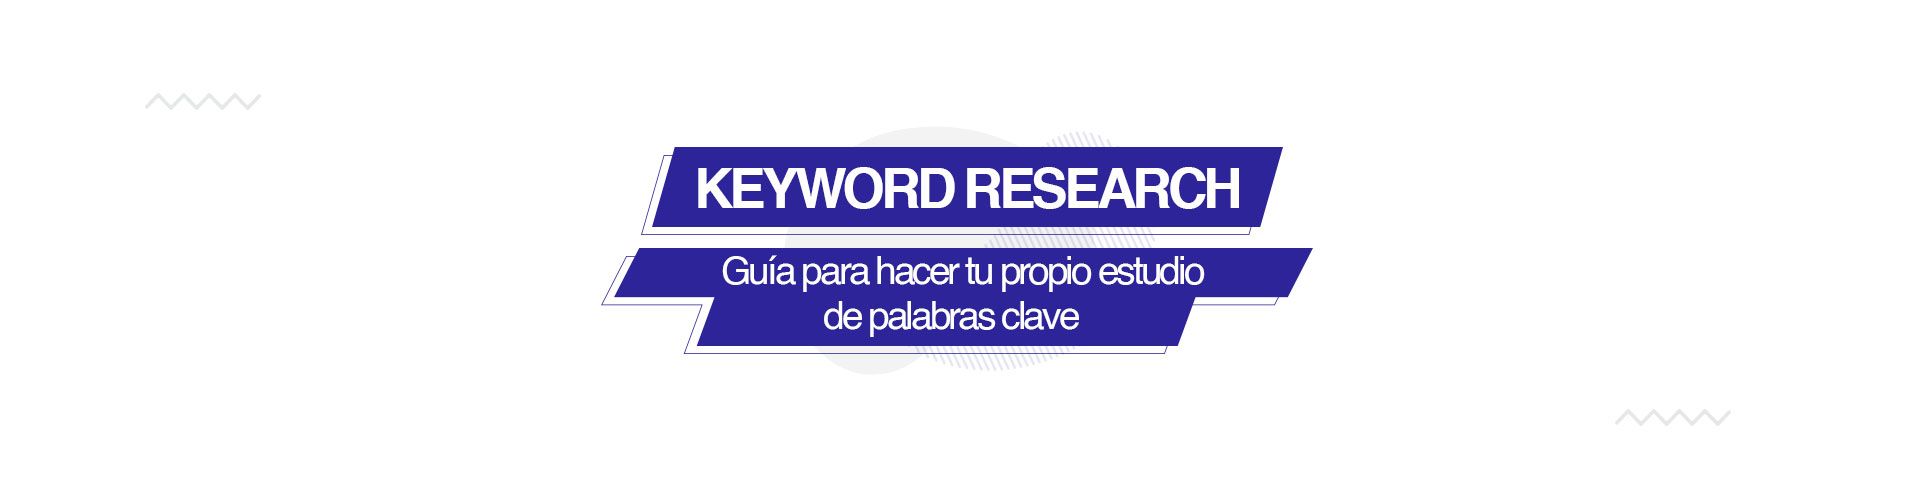 Keyword research: Guia para realizar tu propio estudio de palabras clave